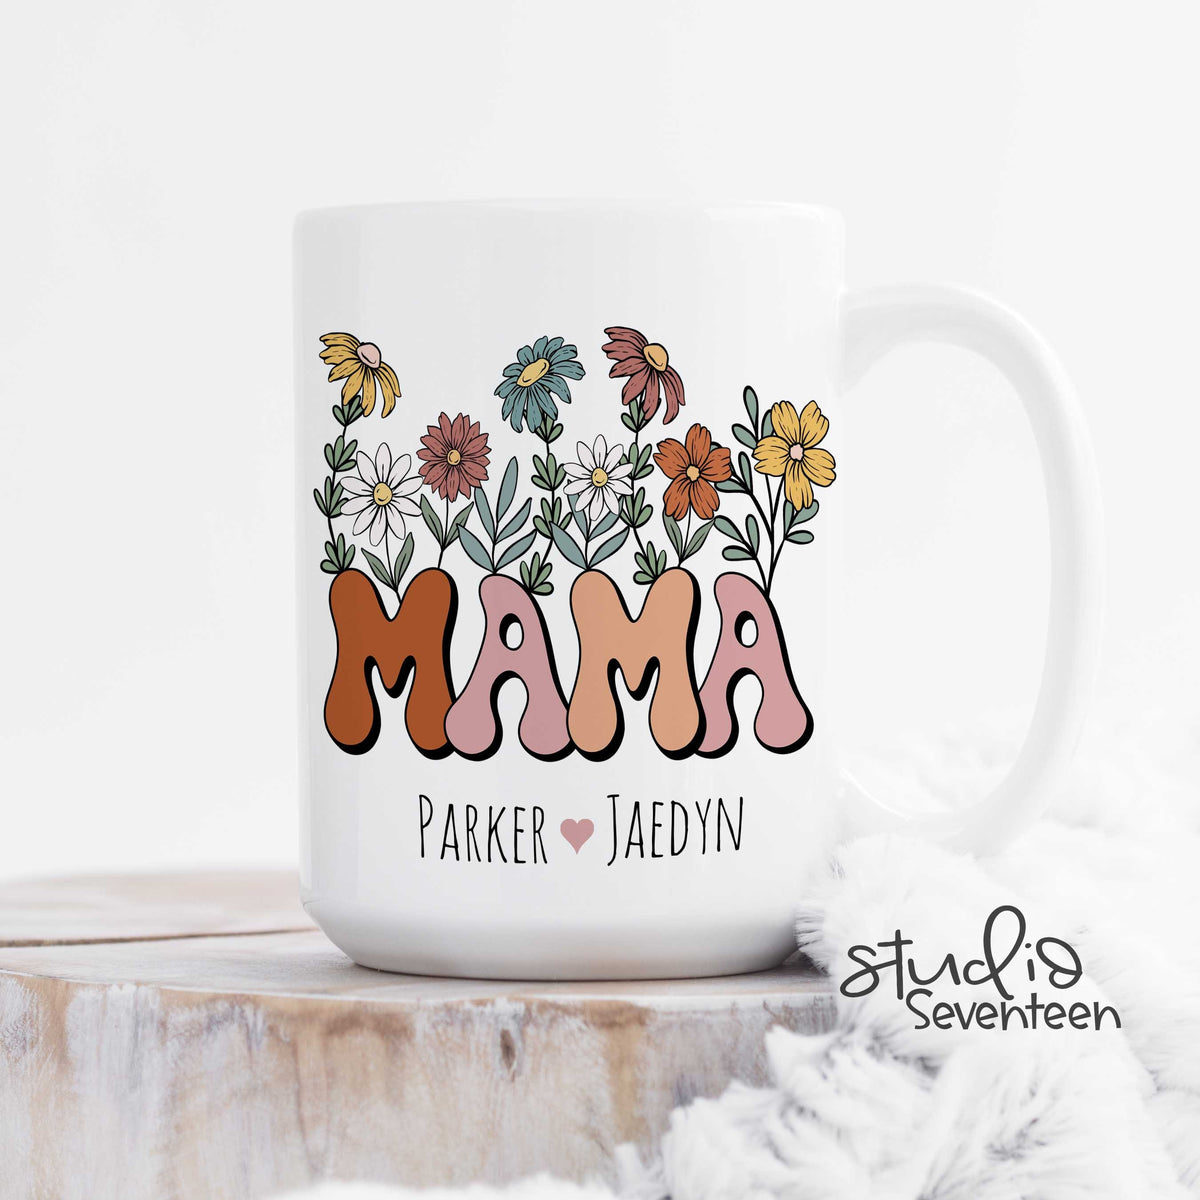 Studio, Super Mum Mug Gift Set, None